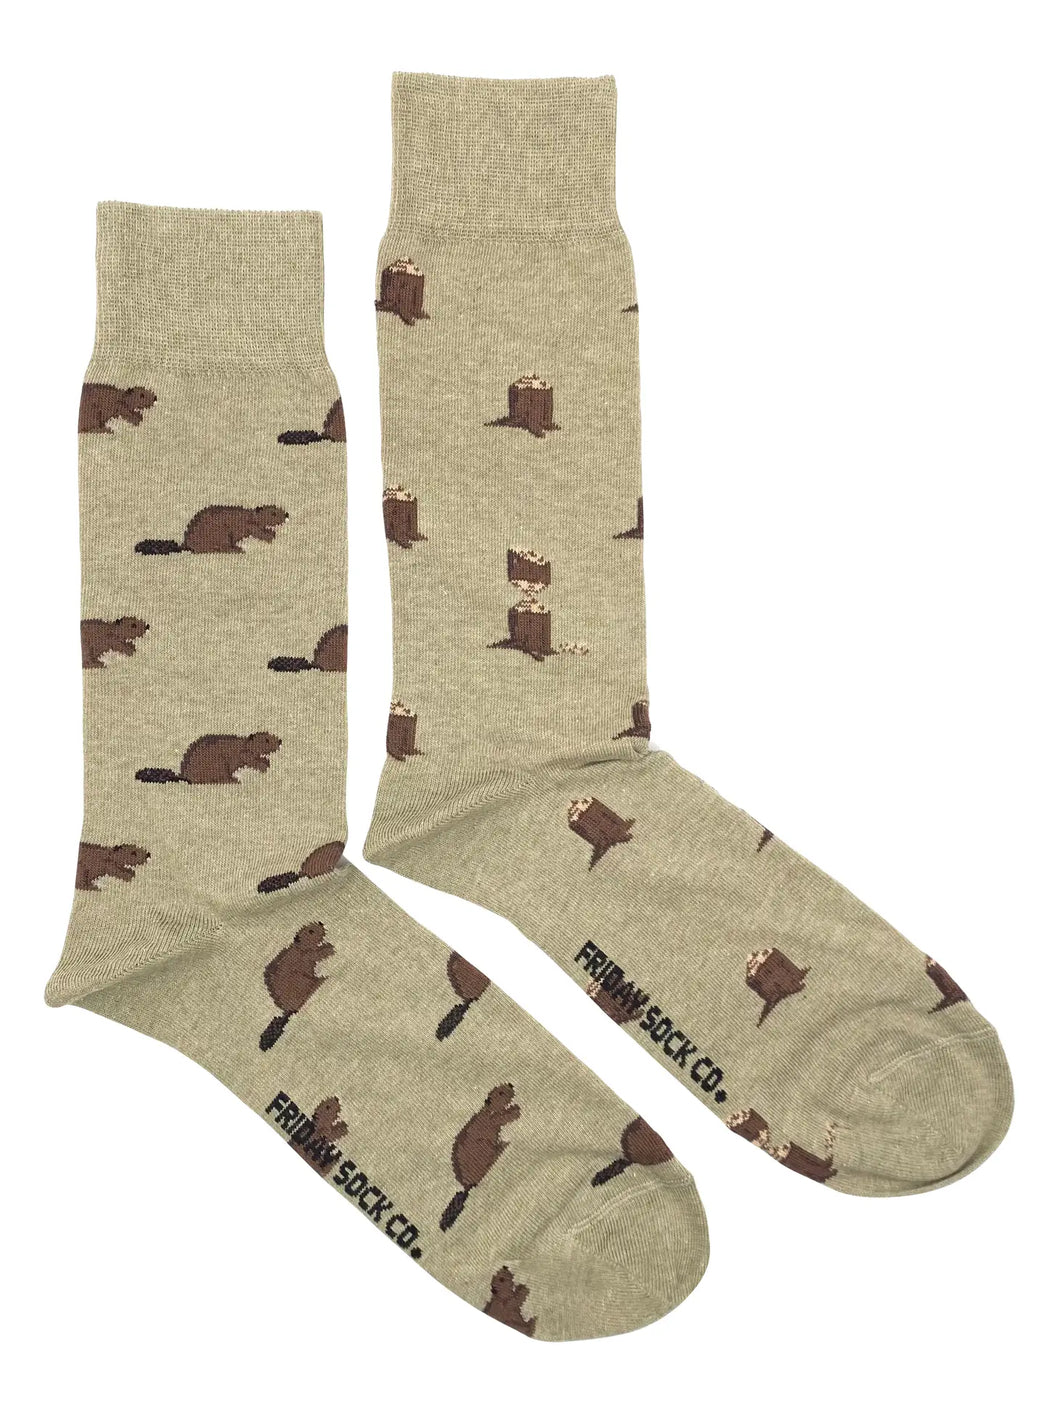 men's socks - beaver & log